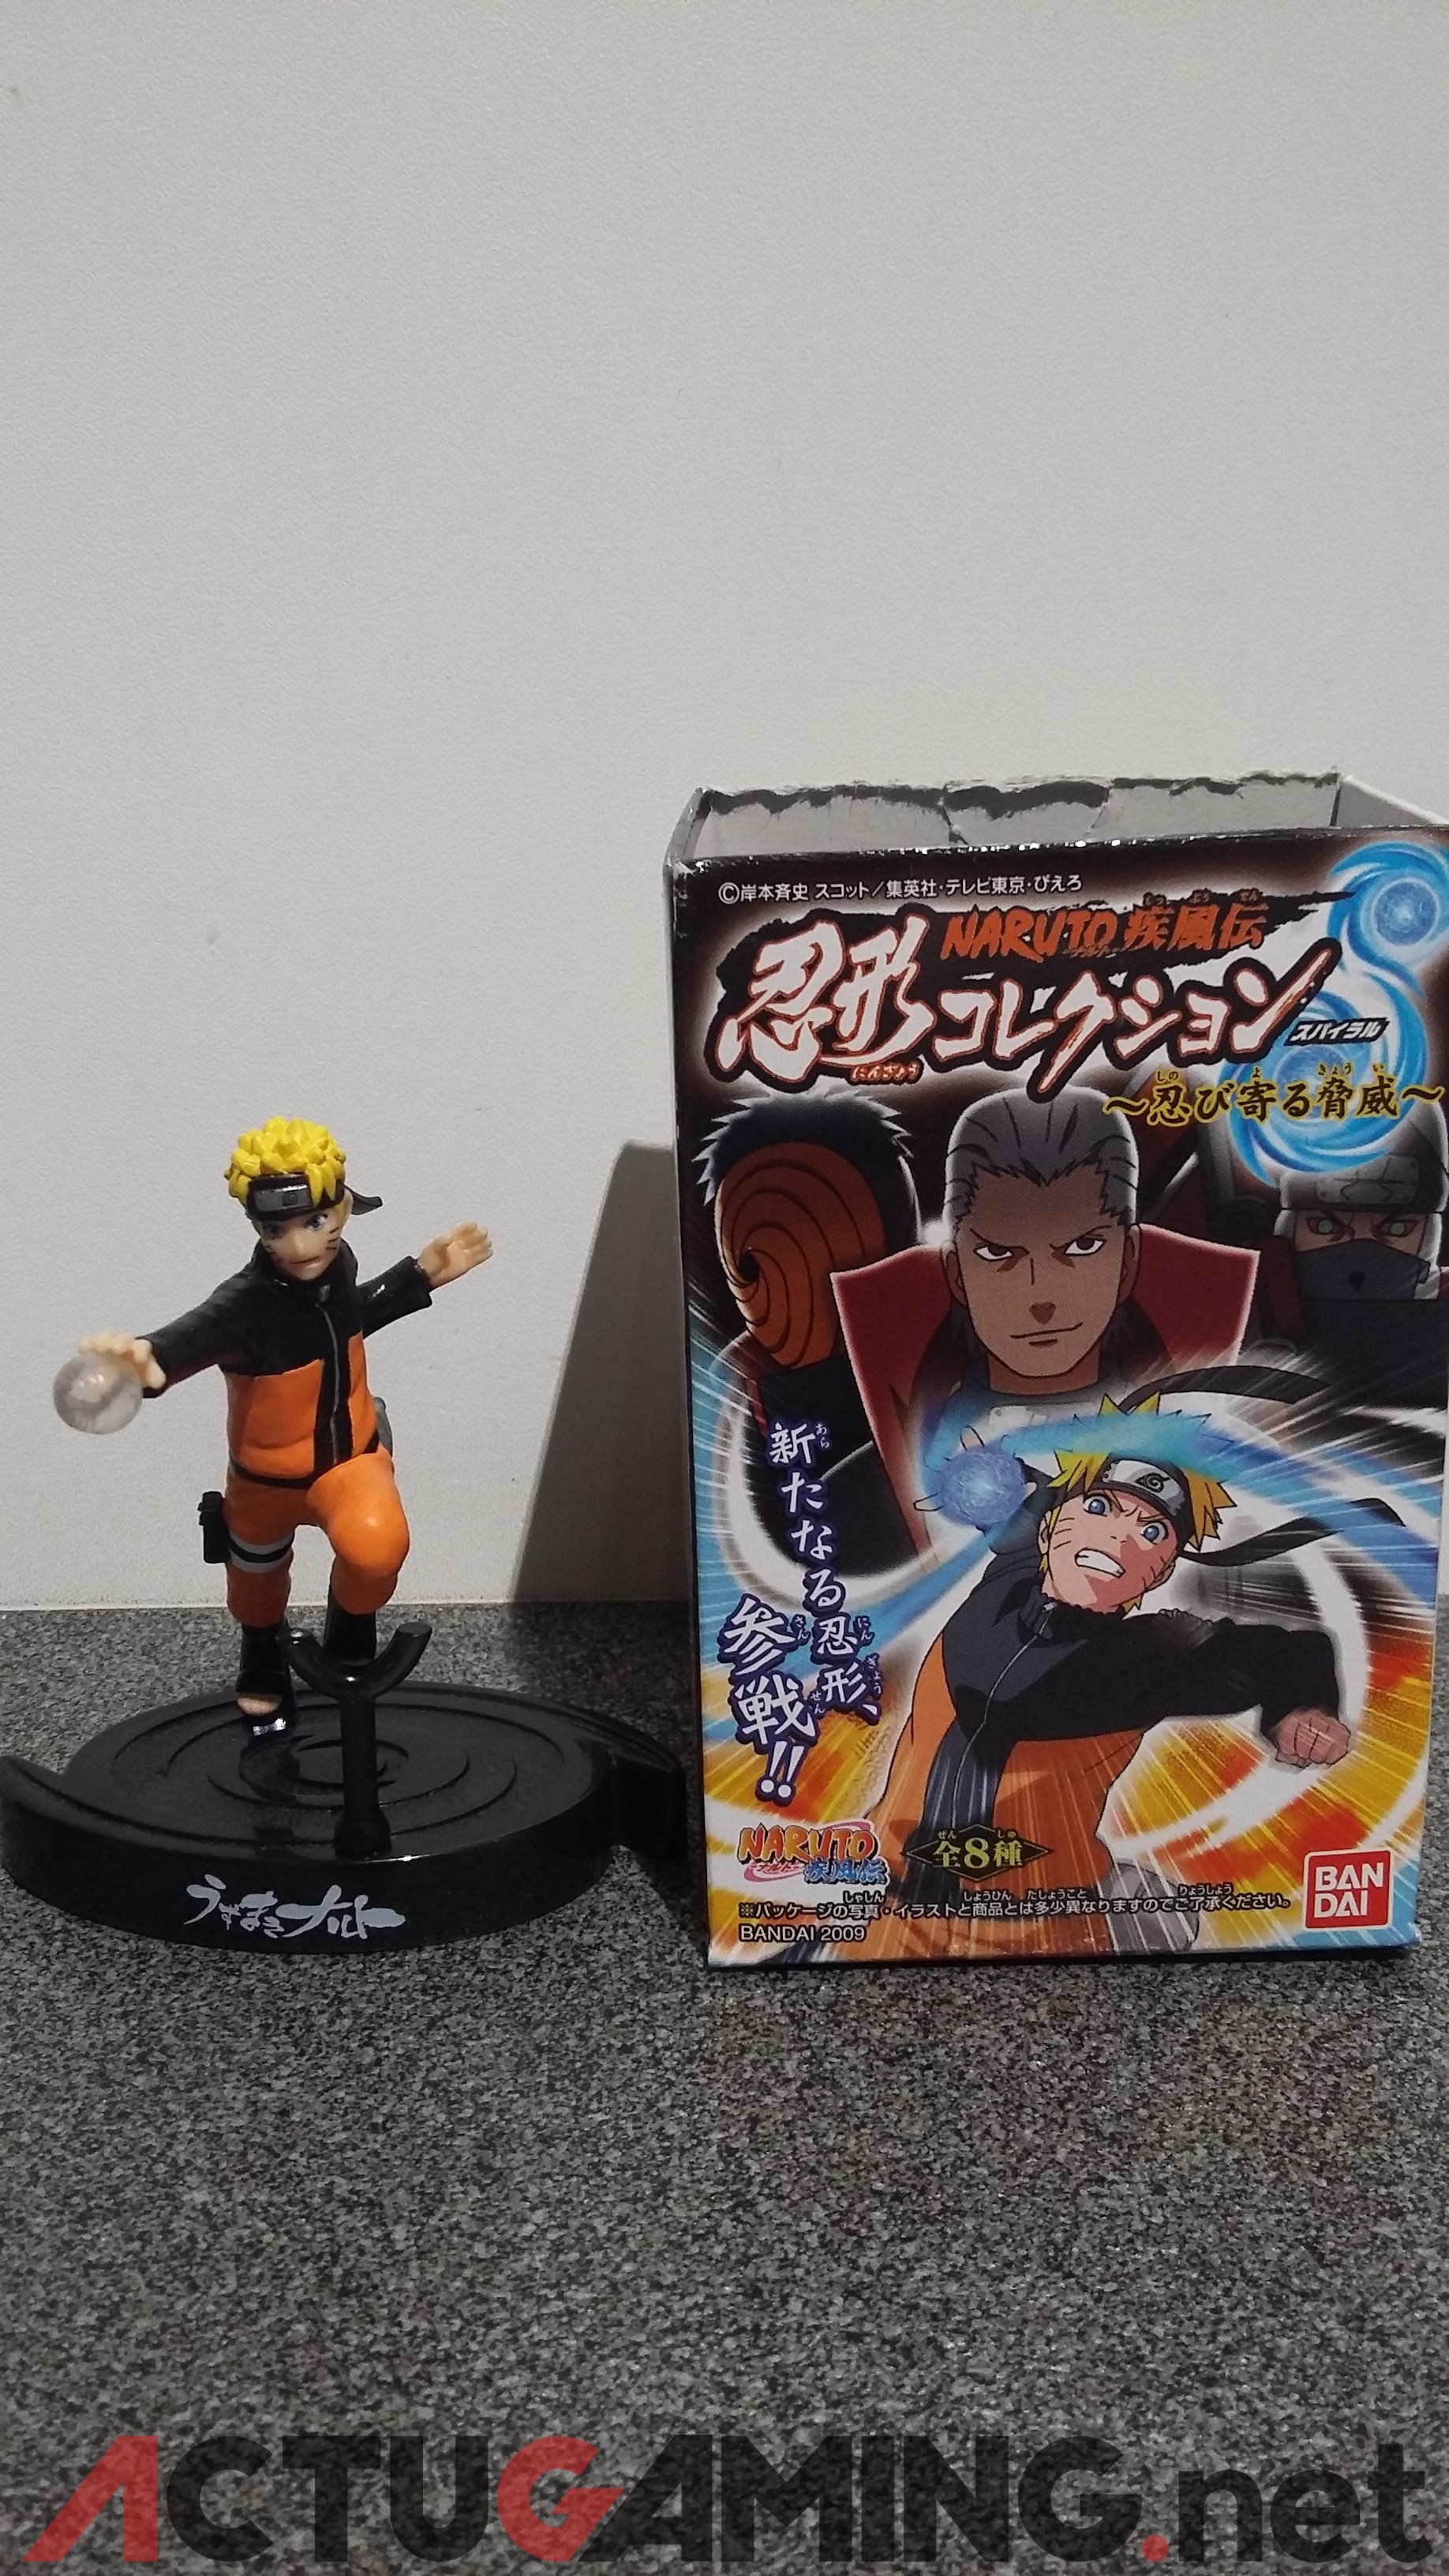 Naruto storm 4 lots tournoi (2)